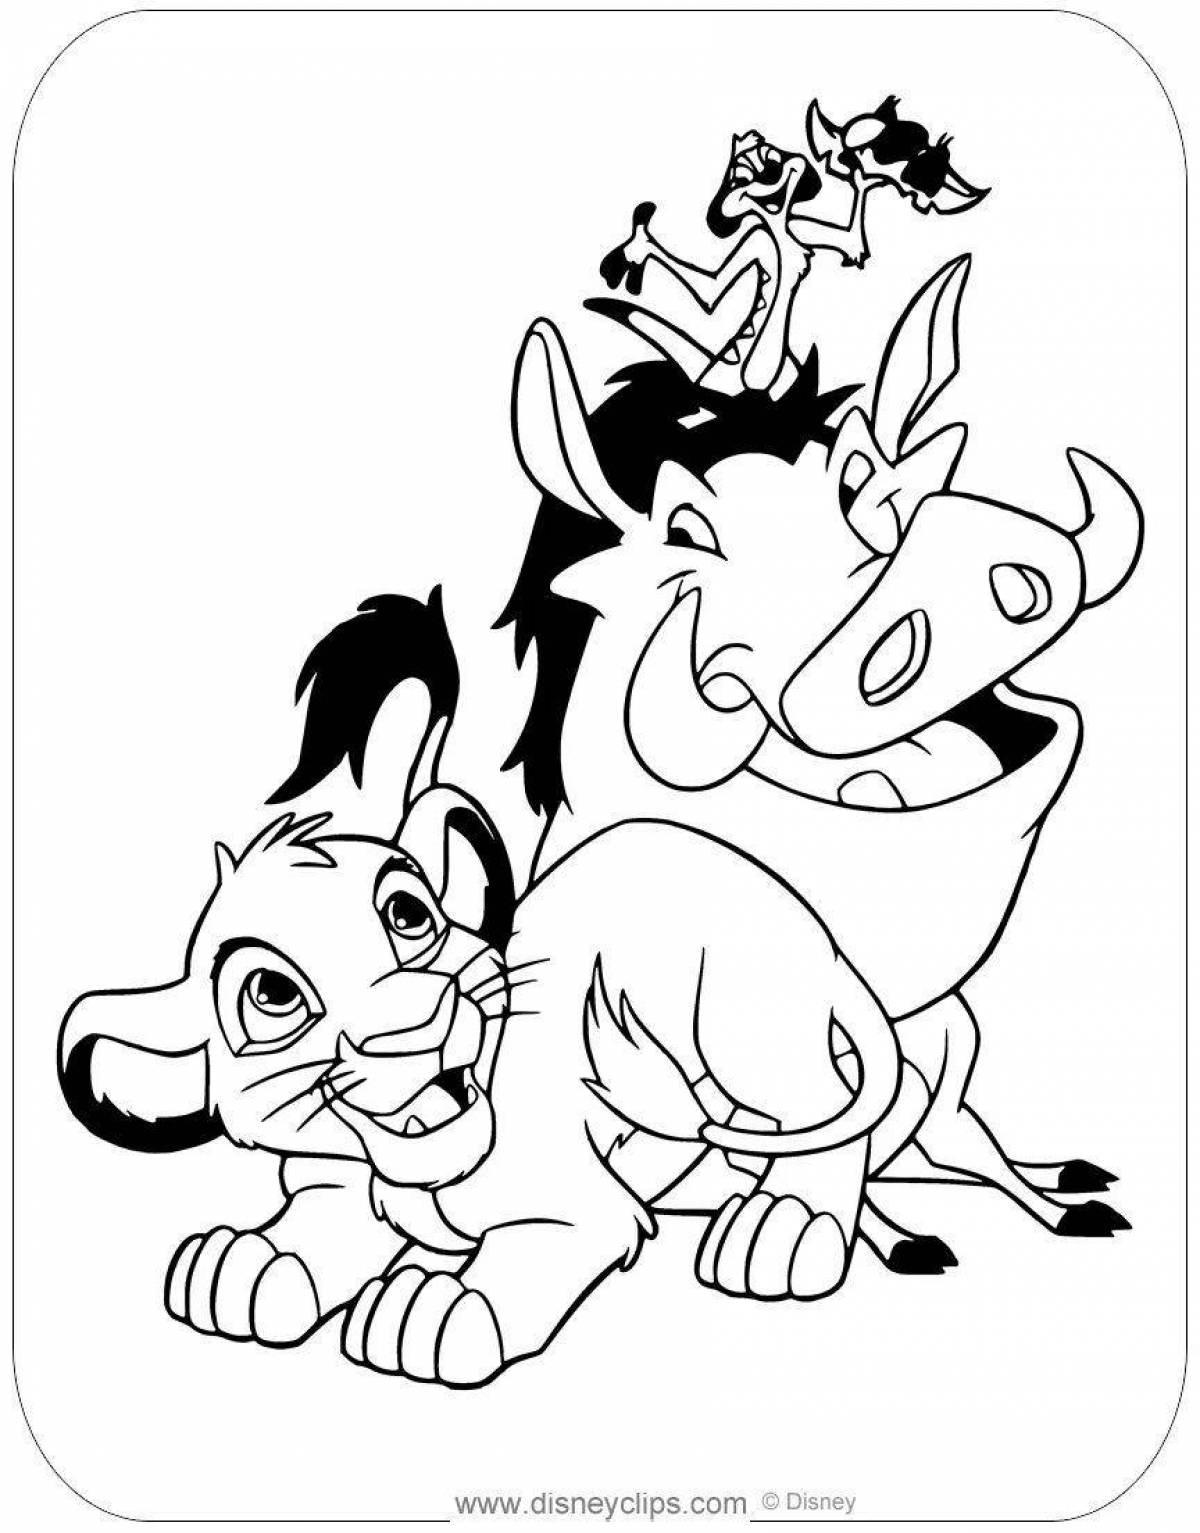 Раскраска Тимон и Пумба | Раскраски из мультфильма Король лев (Lion King)